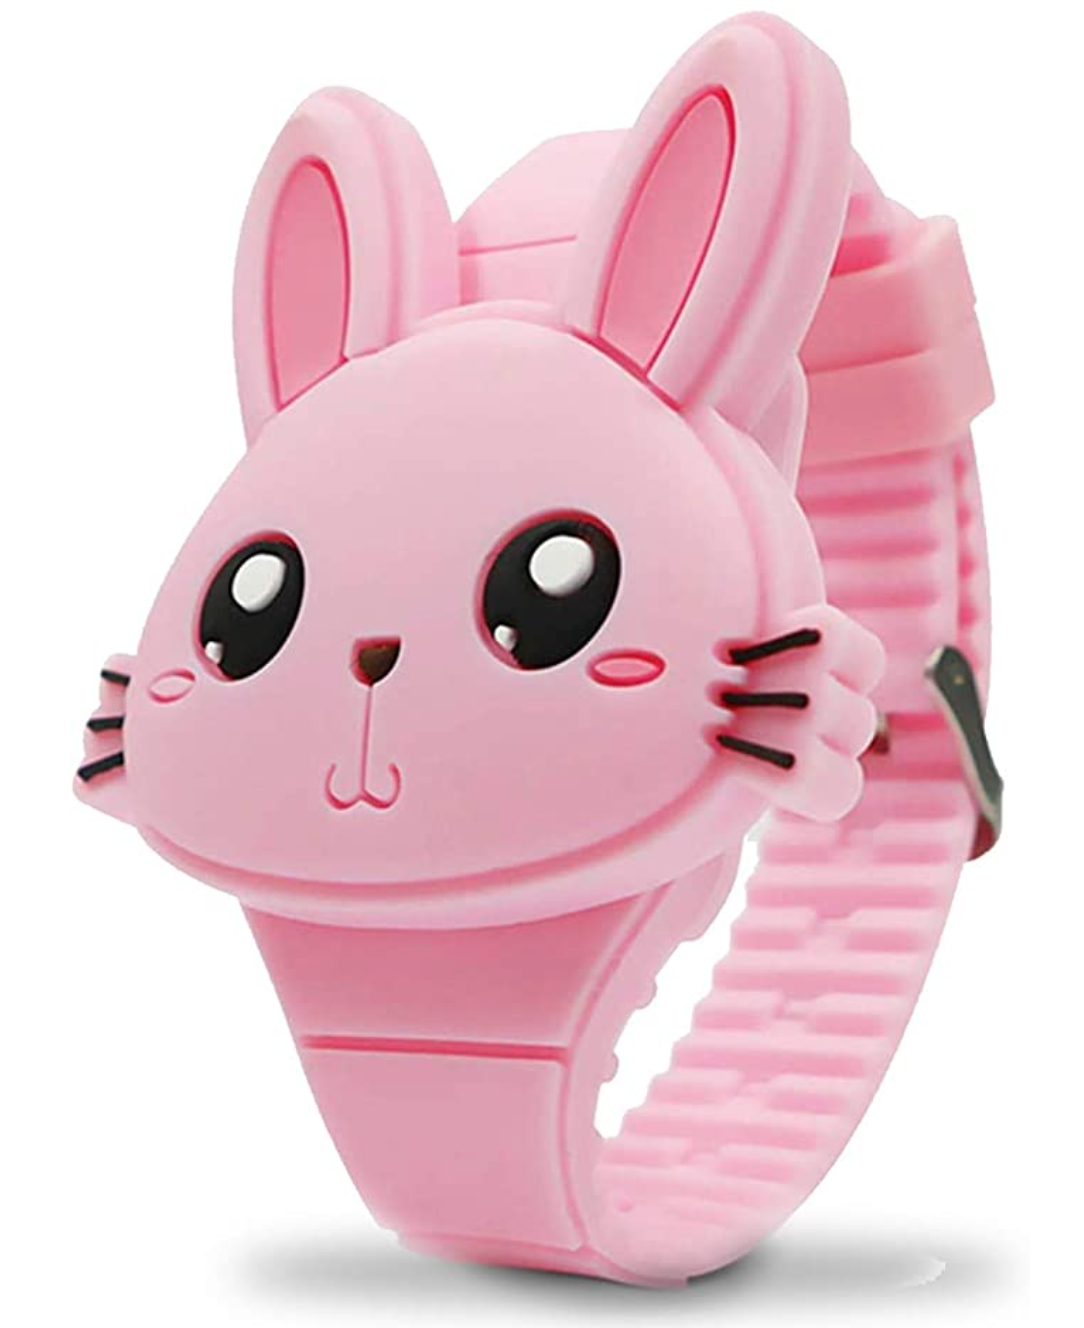 Bunny Digital Watch